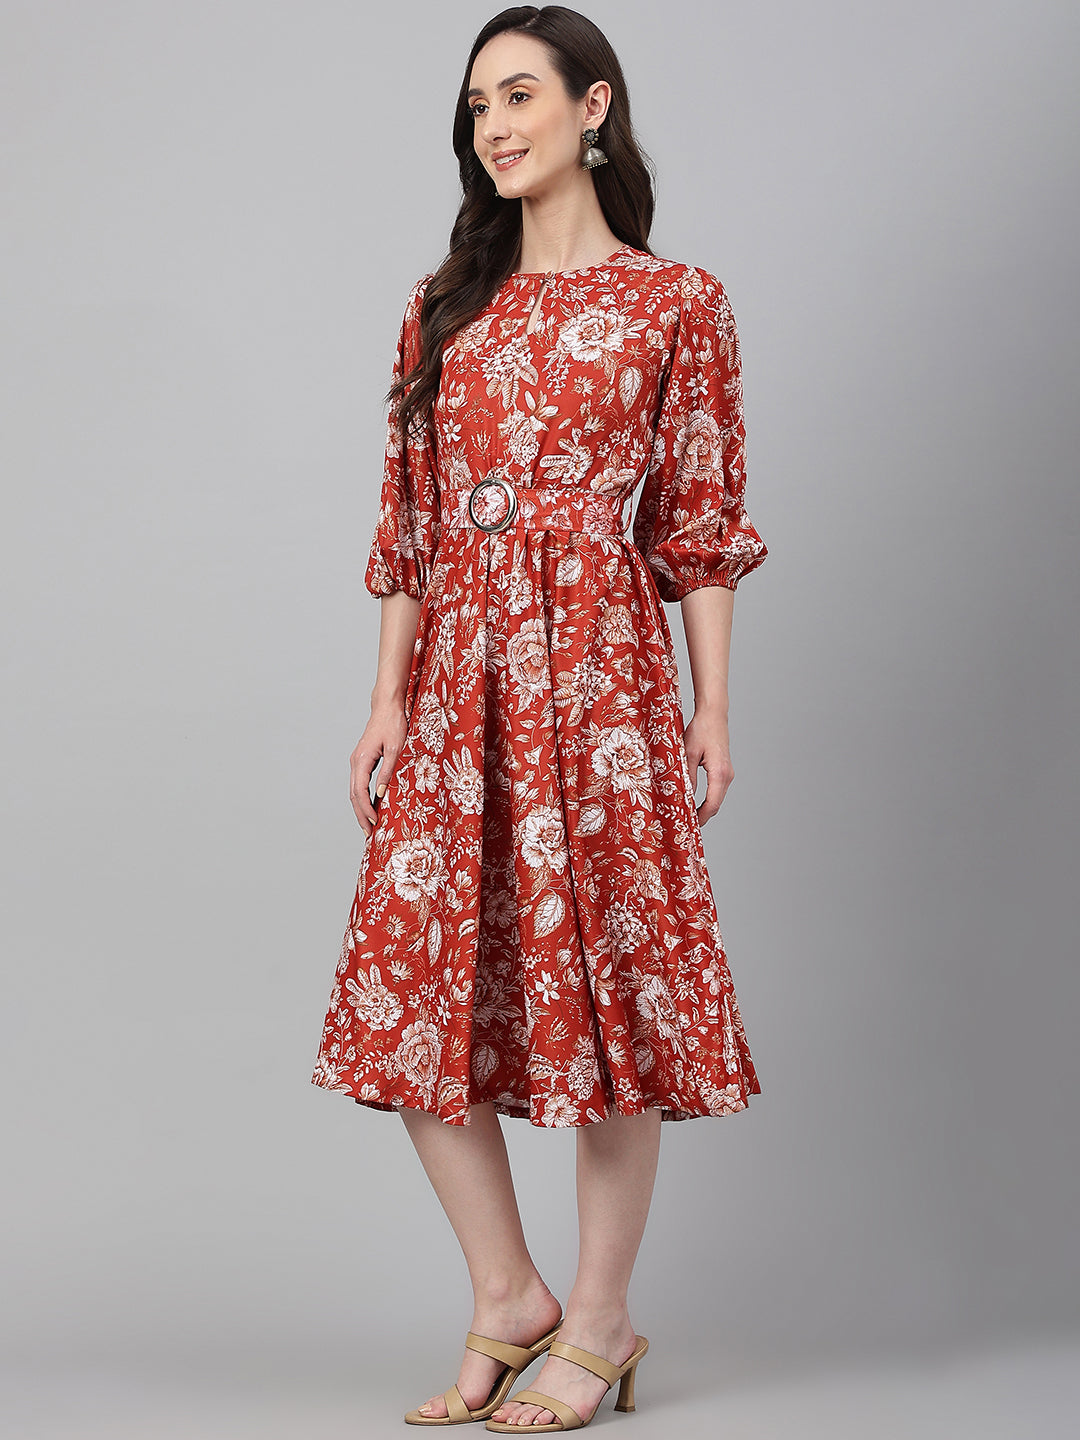 Women's Digital Printed Rust Crepe Dress - Janasya